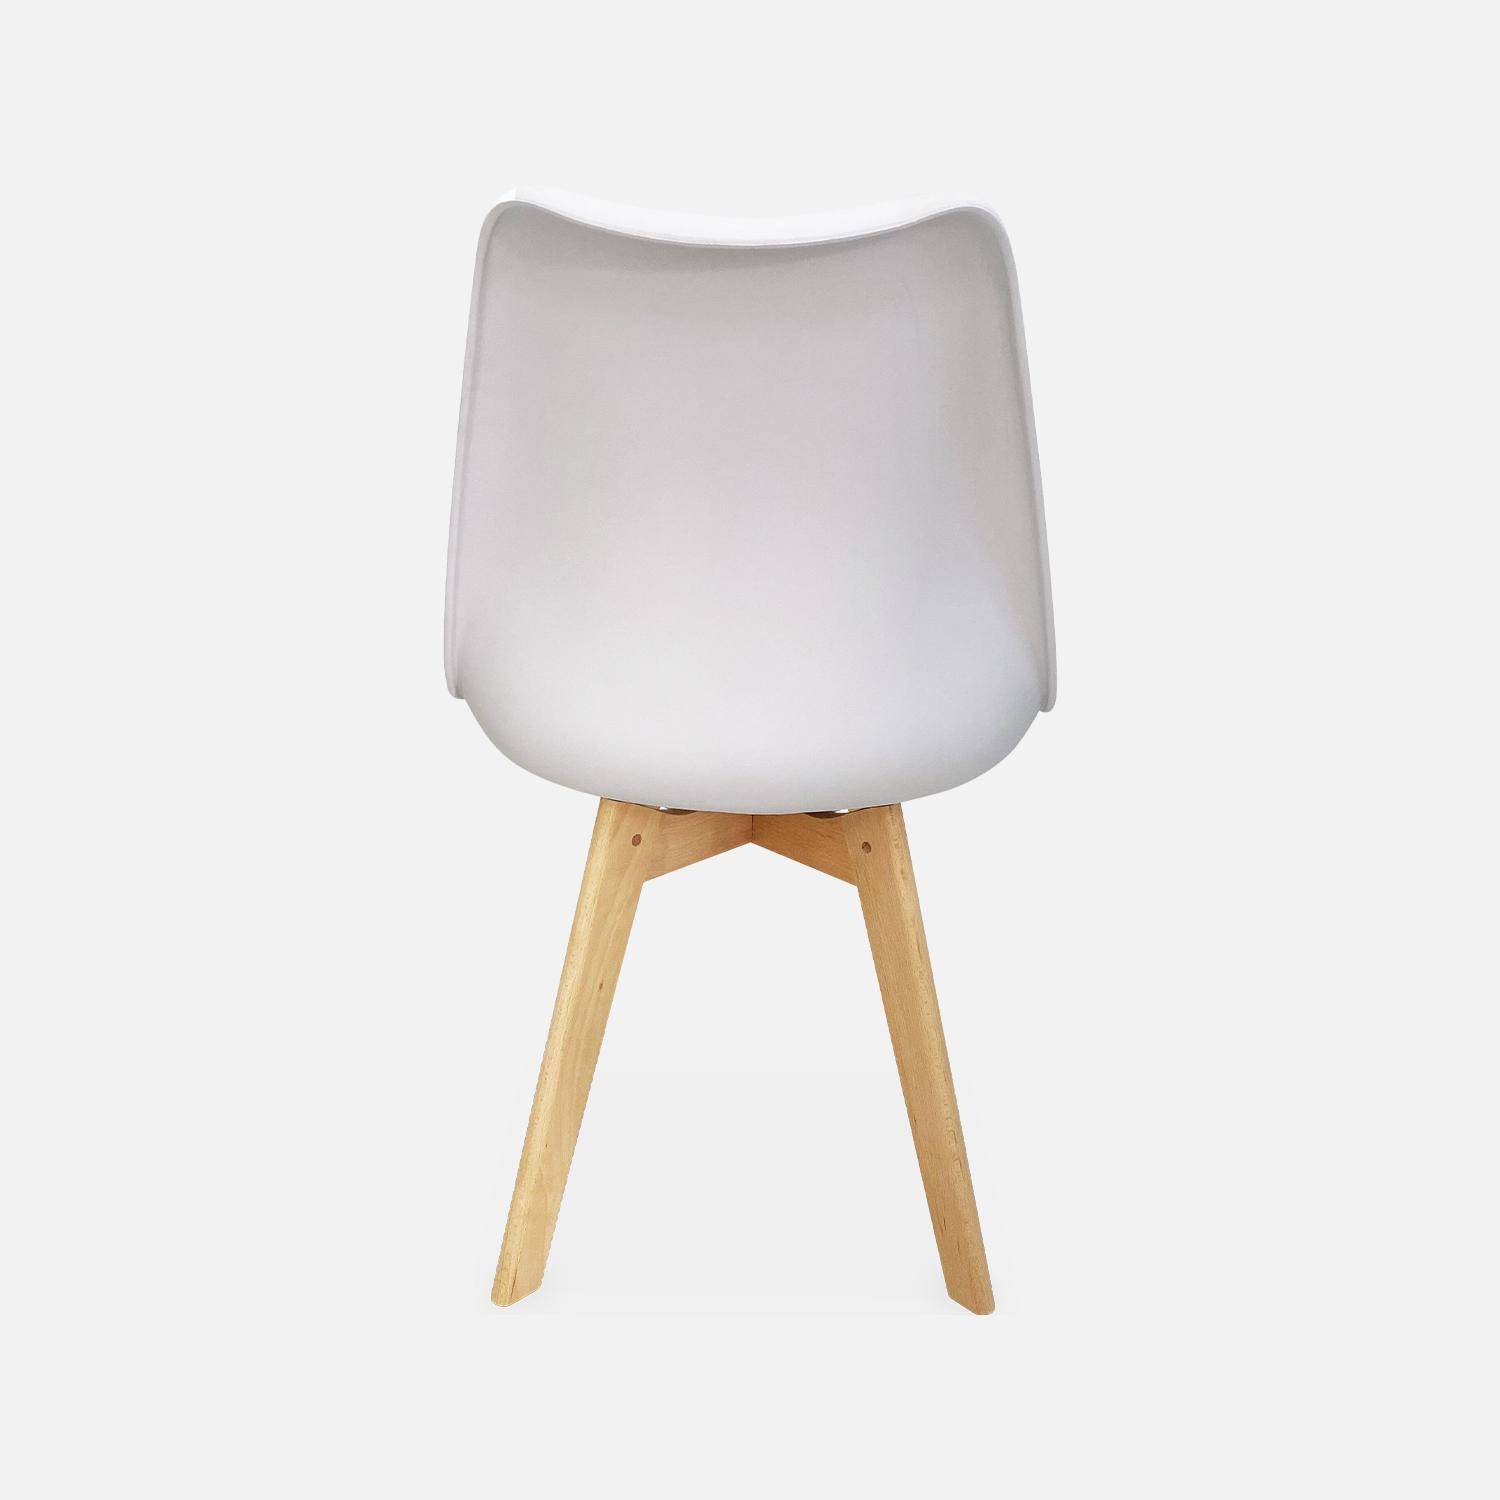 Juego de 6 sillas escandinavas, patas de madera de haya, monoplaza, blanco Photo7